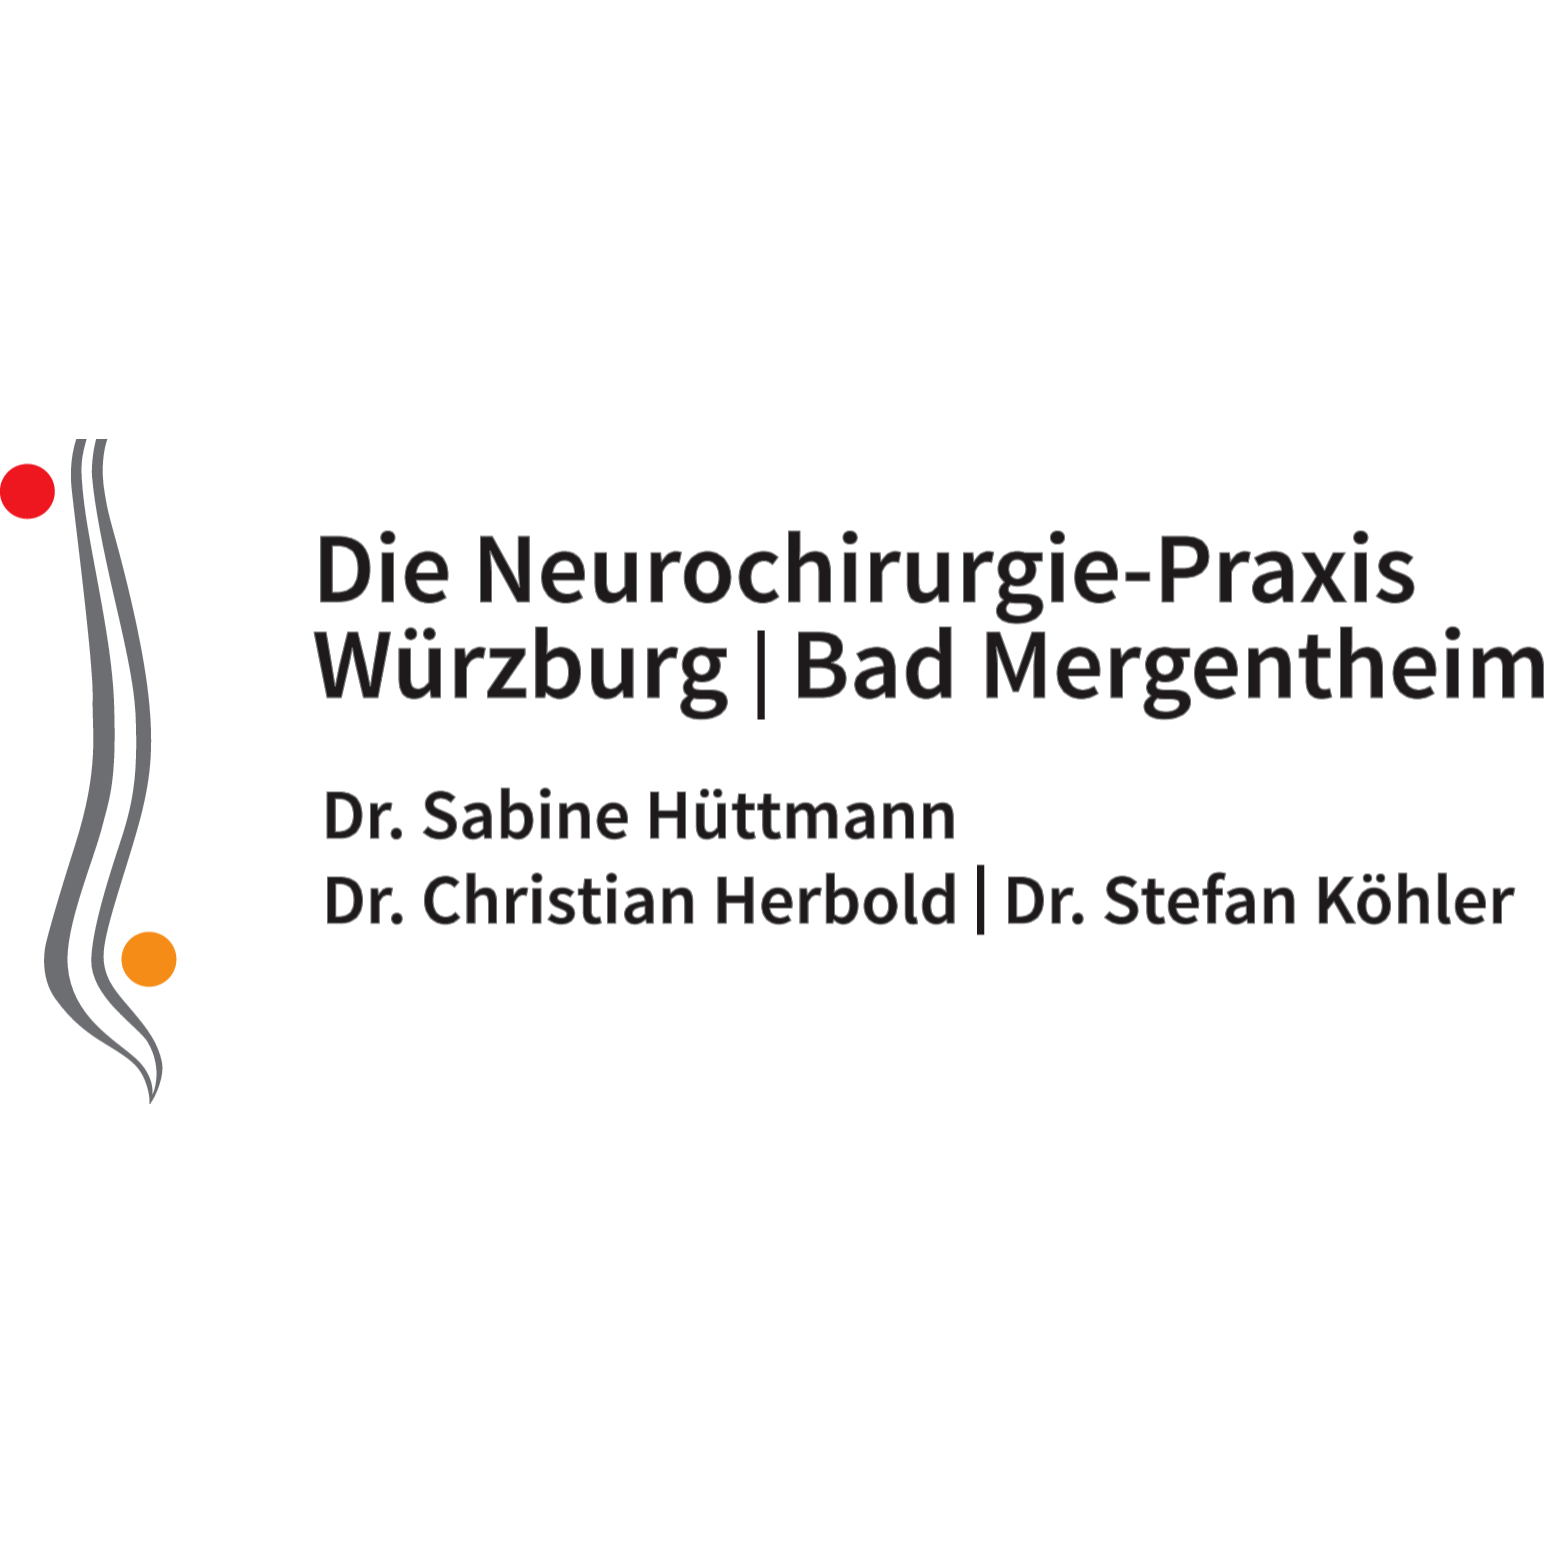 Die Neurochirurgie - Praxis Würzburg Bad Mergentheim in Lohr am Main - Logo